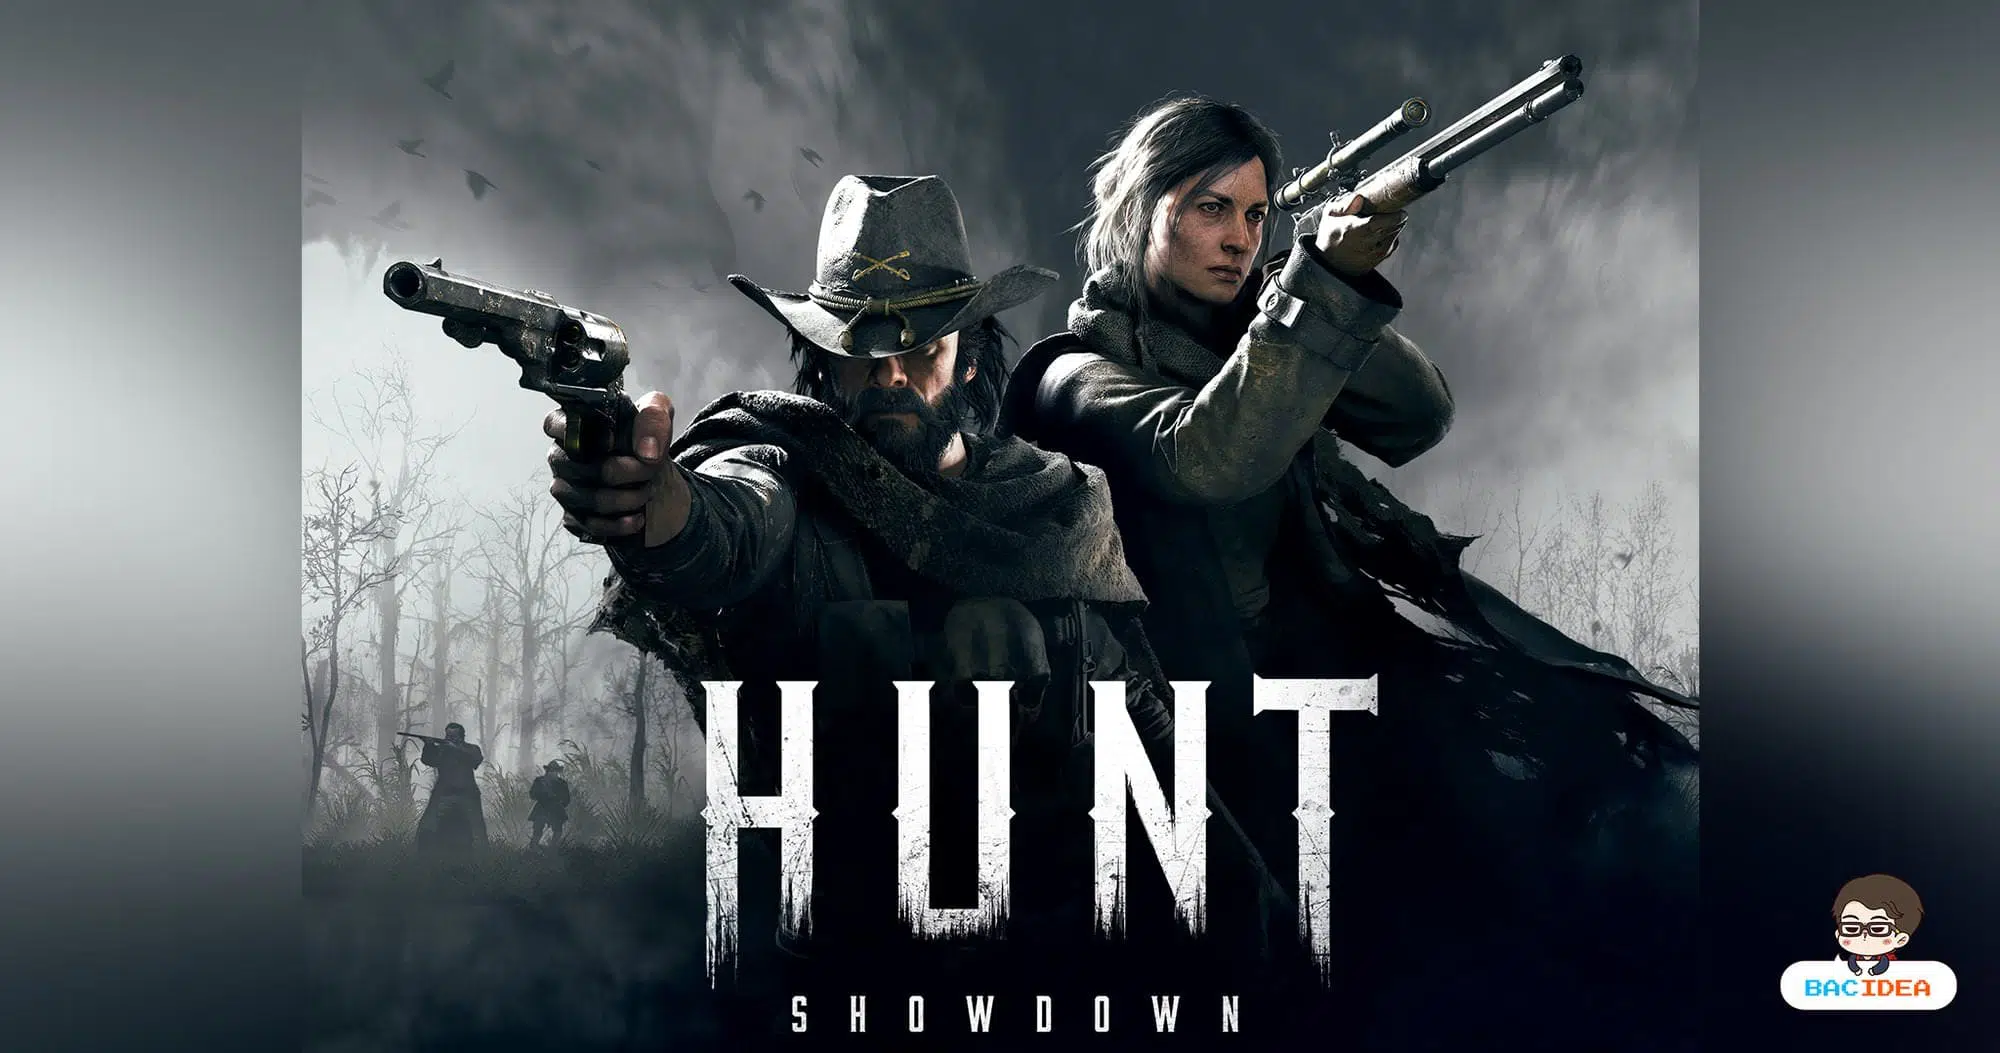 Hunt Showdown เกมสยองขวัญมุมมองบุคคลที่ 1 เตรียมลง PlayStation 4, Xbox One ในไตรมาสที่ 1 ปี 2020 นี้ 1